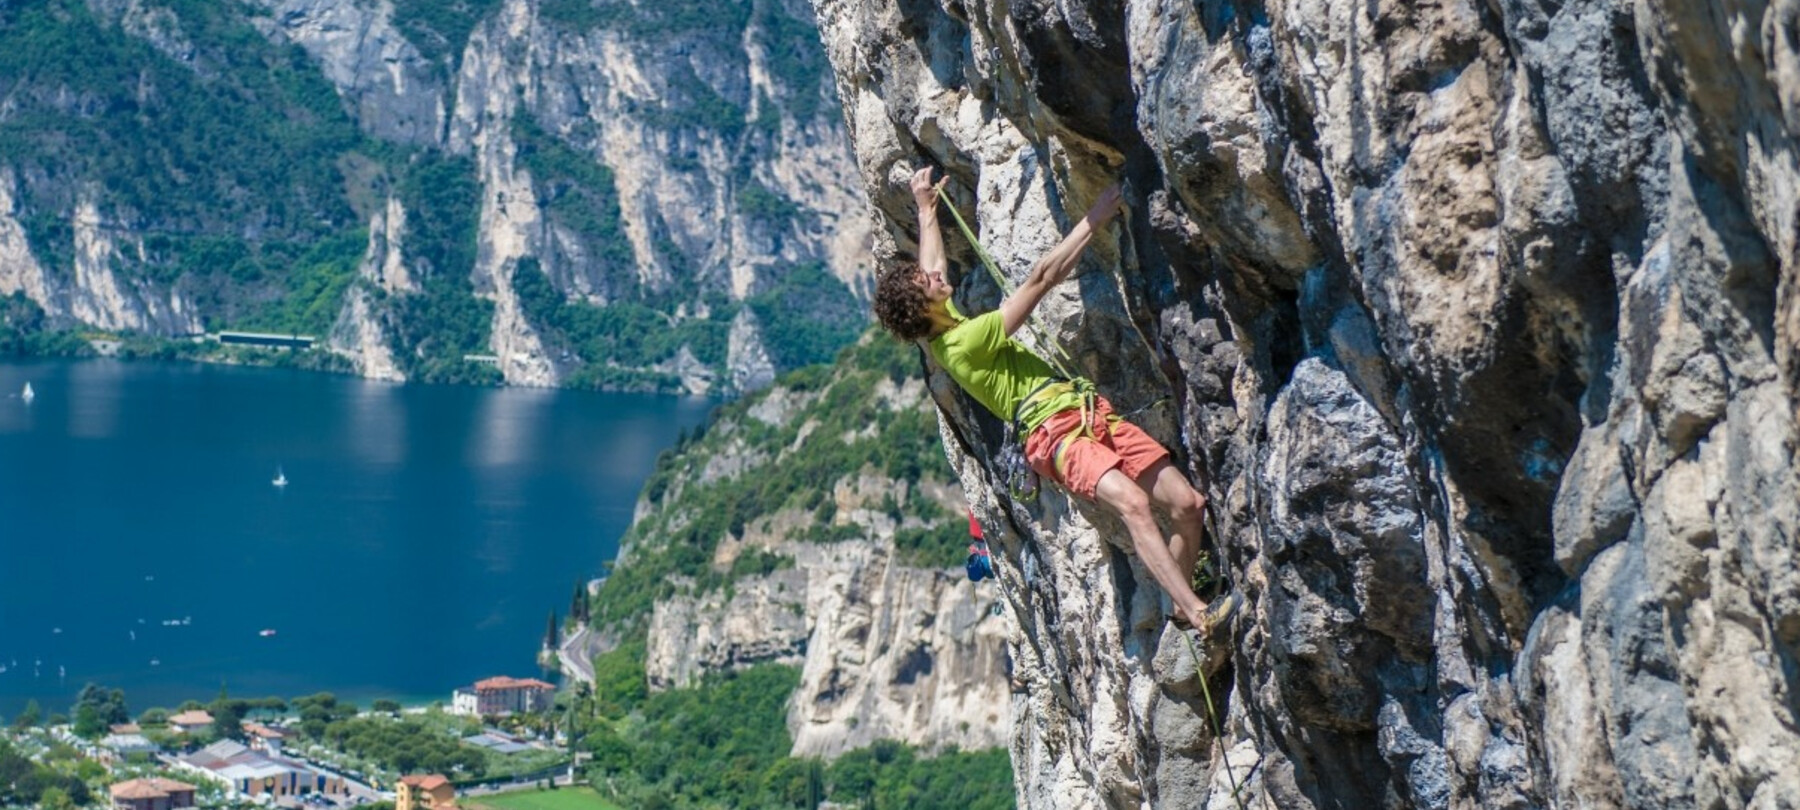 Klettern: 3 Kletterwände am Gardasee, empfohlen von Adam Ondra